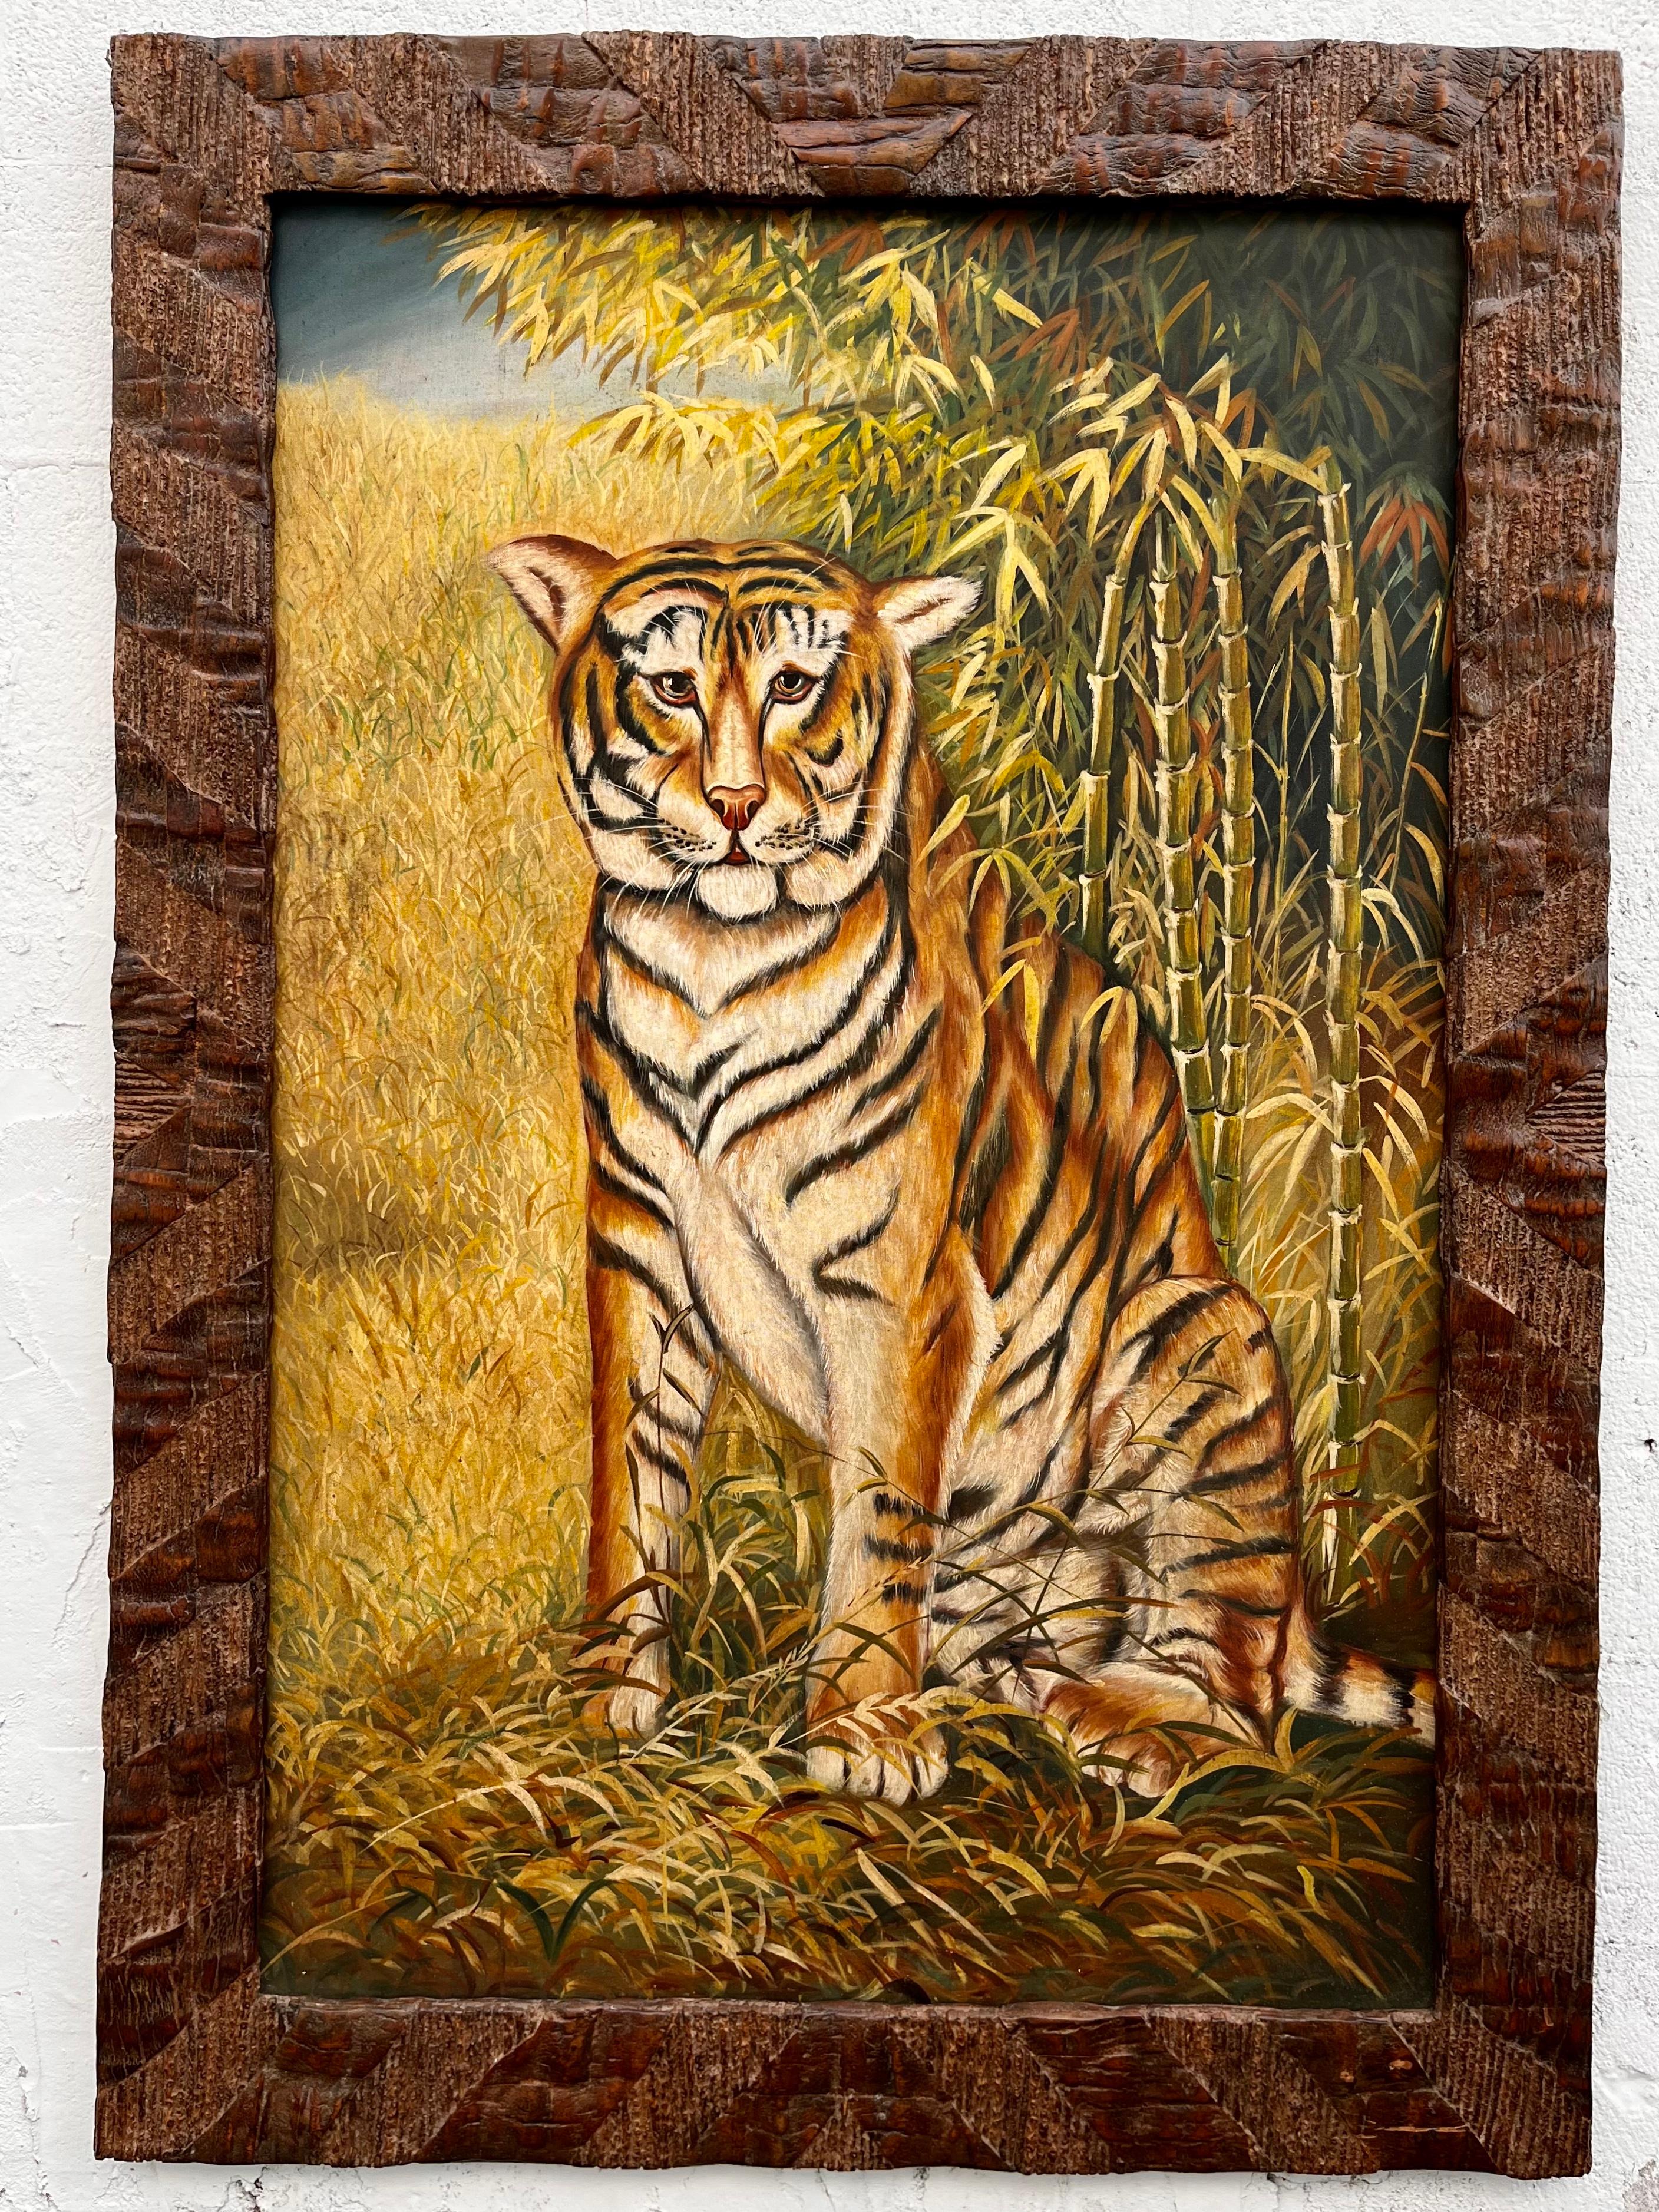 Grande peinture murale encadrée de Maitland-Smith de la fin du 20e siècle. circa 1990 
L'image d'un Tigre peint à la main dans le style de l'art primitif sur fond de feuillage tropical. Encadré avec un magnifique cadre rustique en bois massif.
En